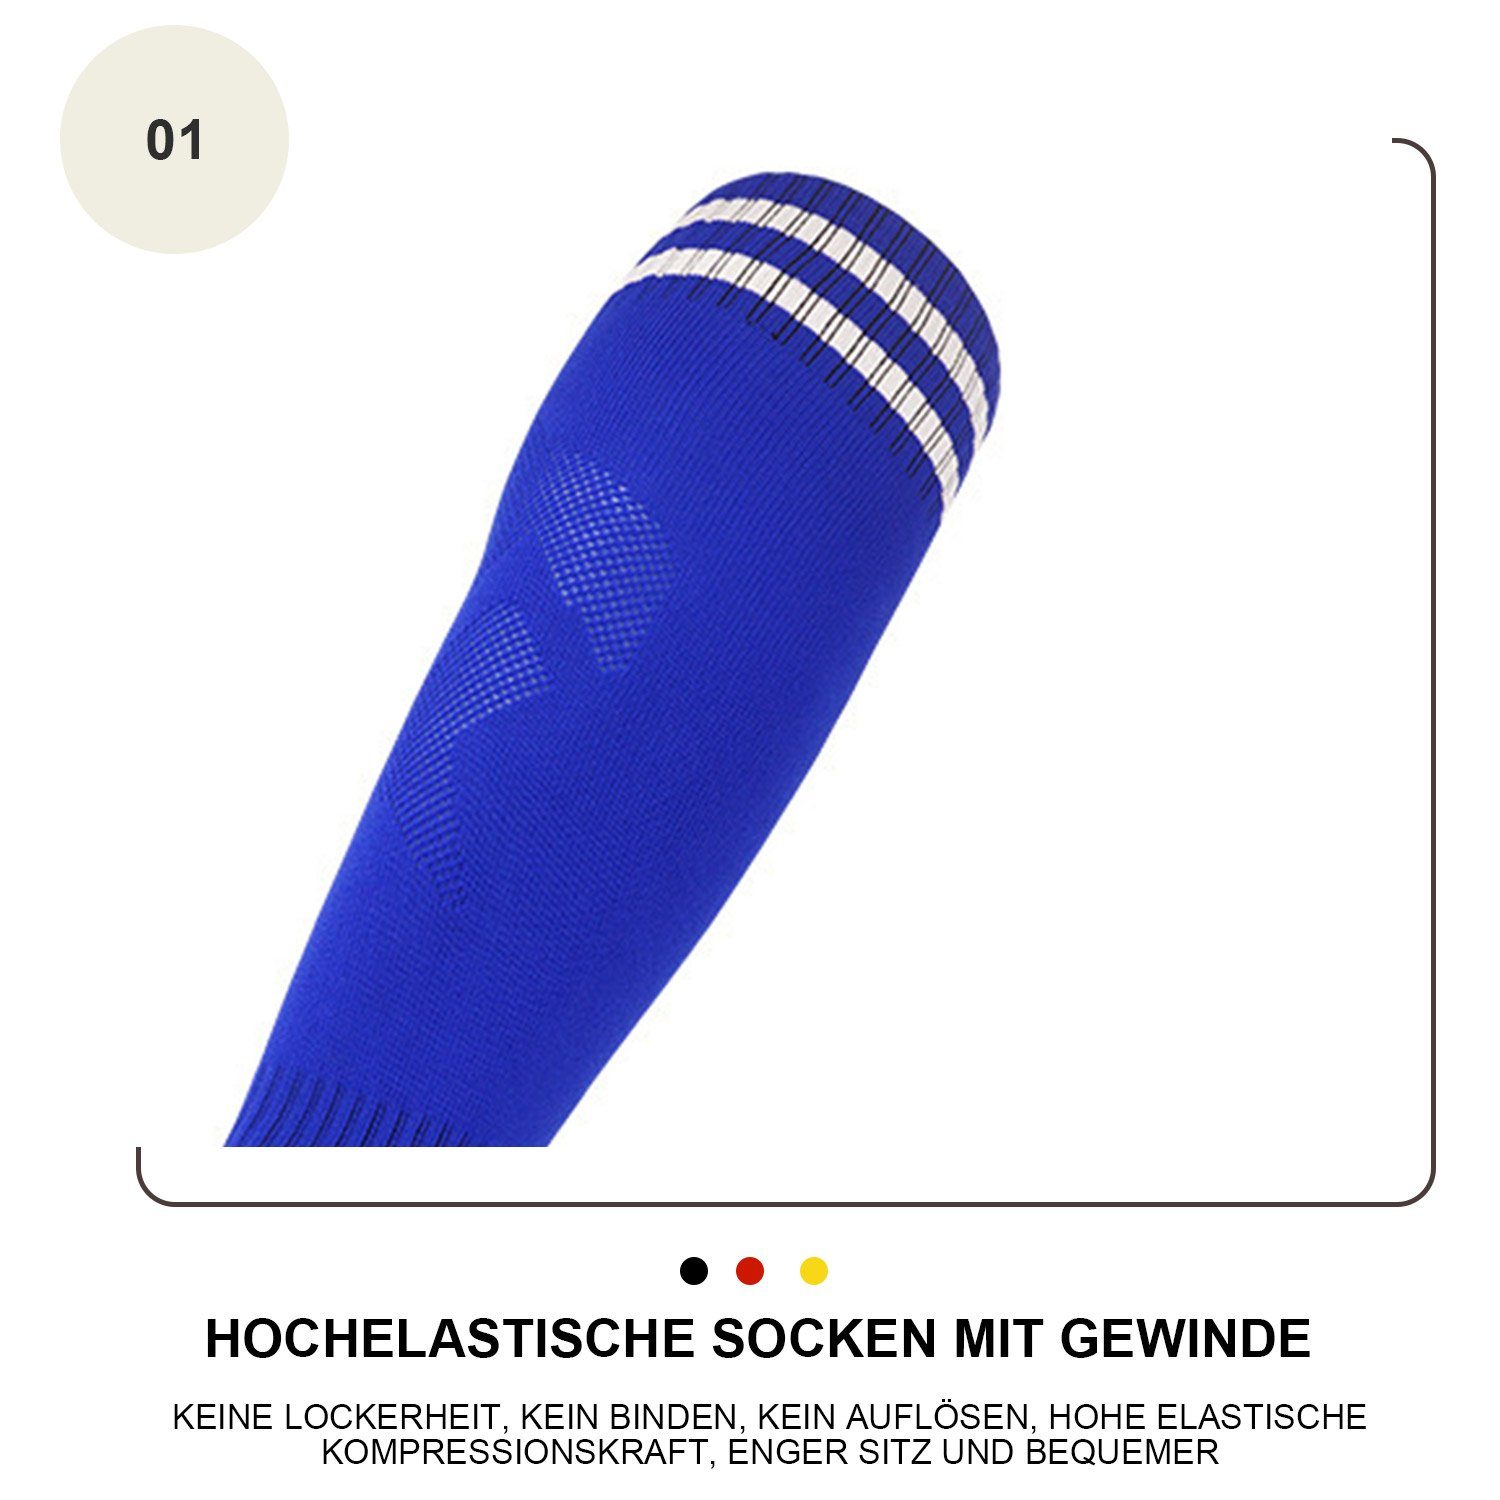 Blau für Fußballtraining, Laufen Socken MAGICSHE und Bewegung Training Sportsocken Socken Erwachsene Neutral Fadenfäden Kinderfußball -Socken